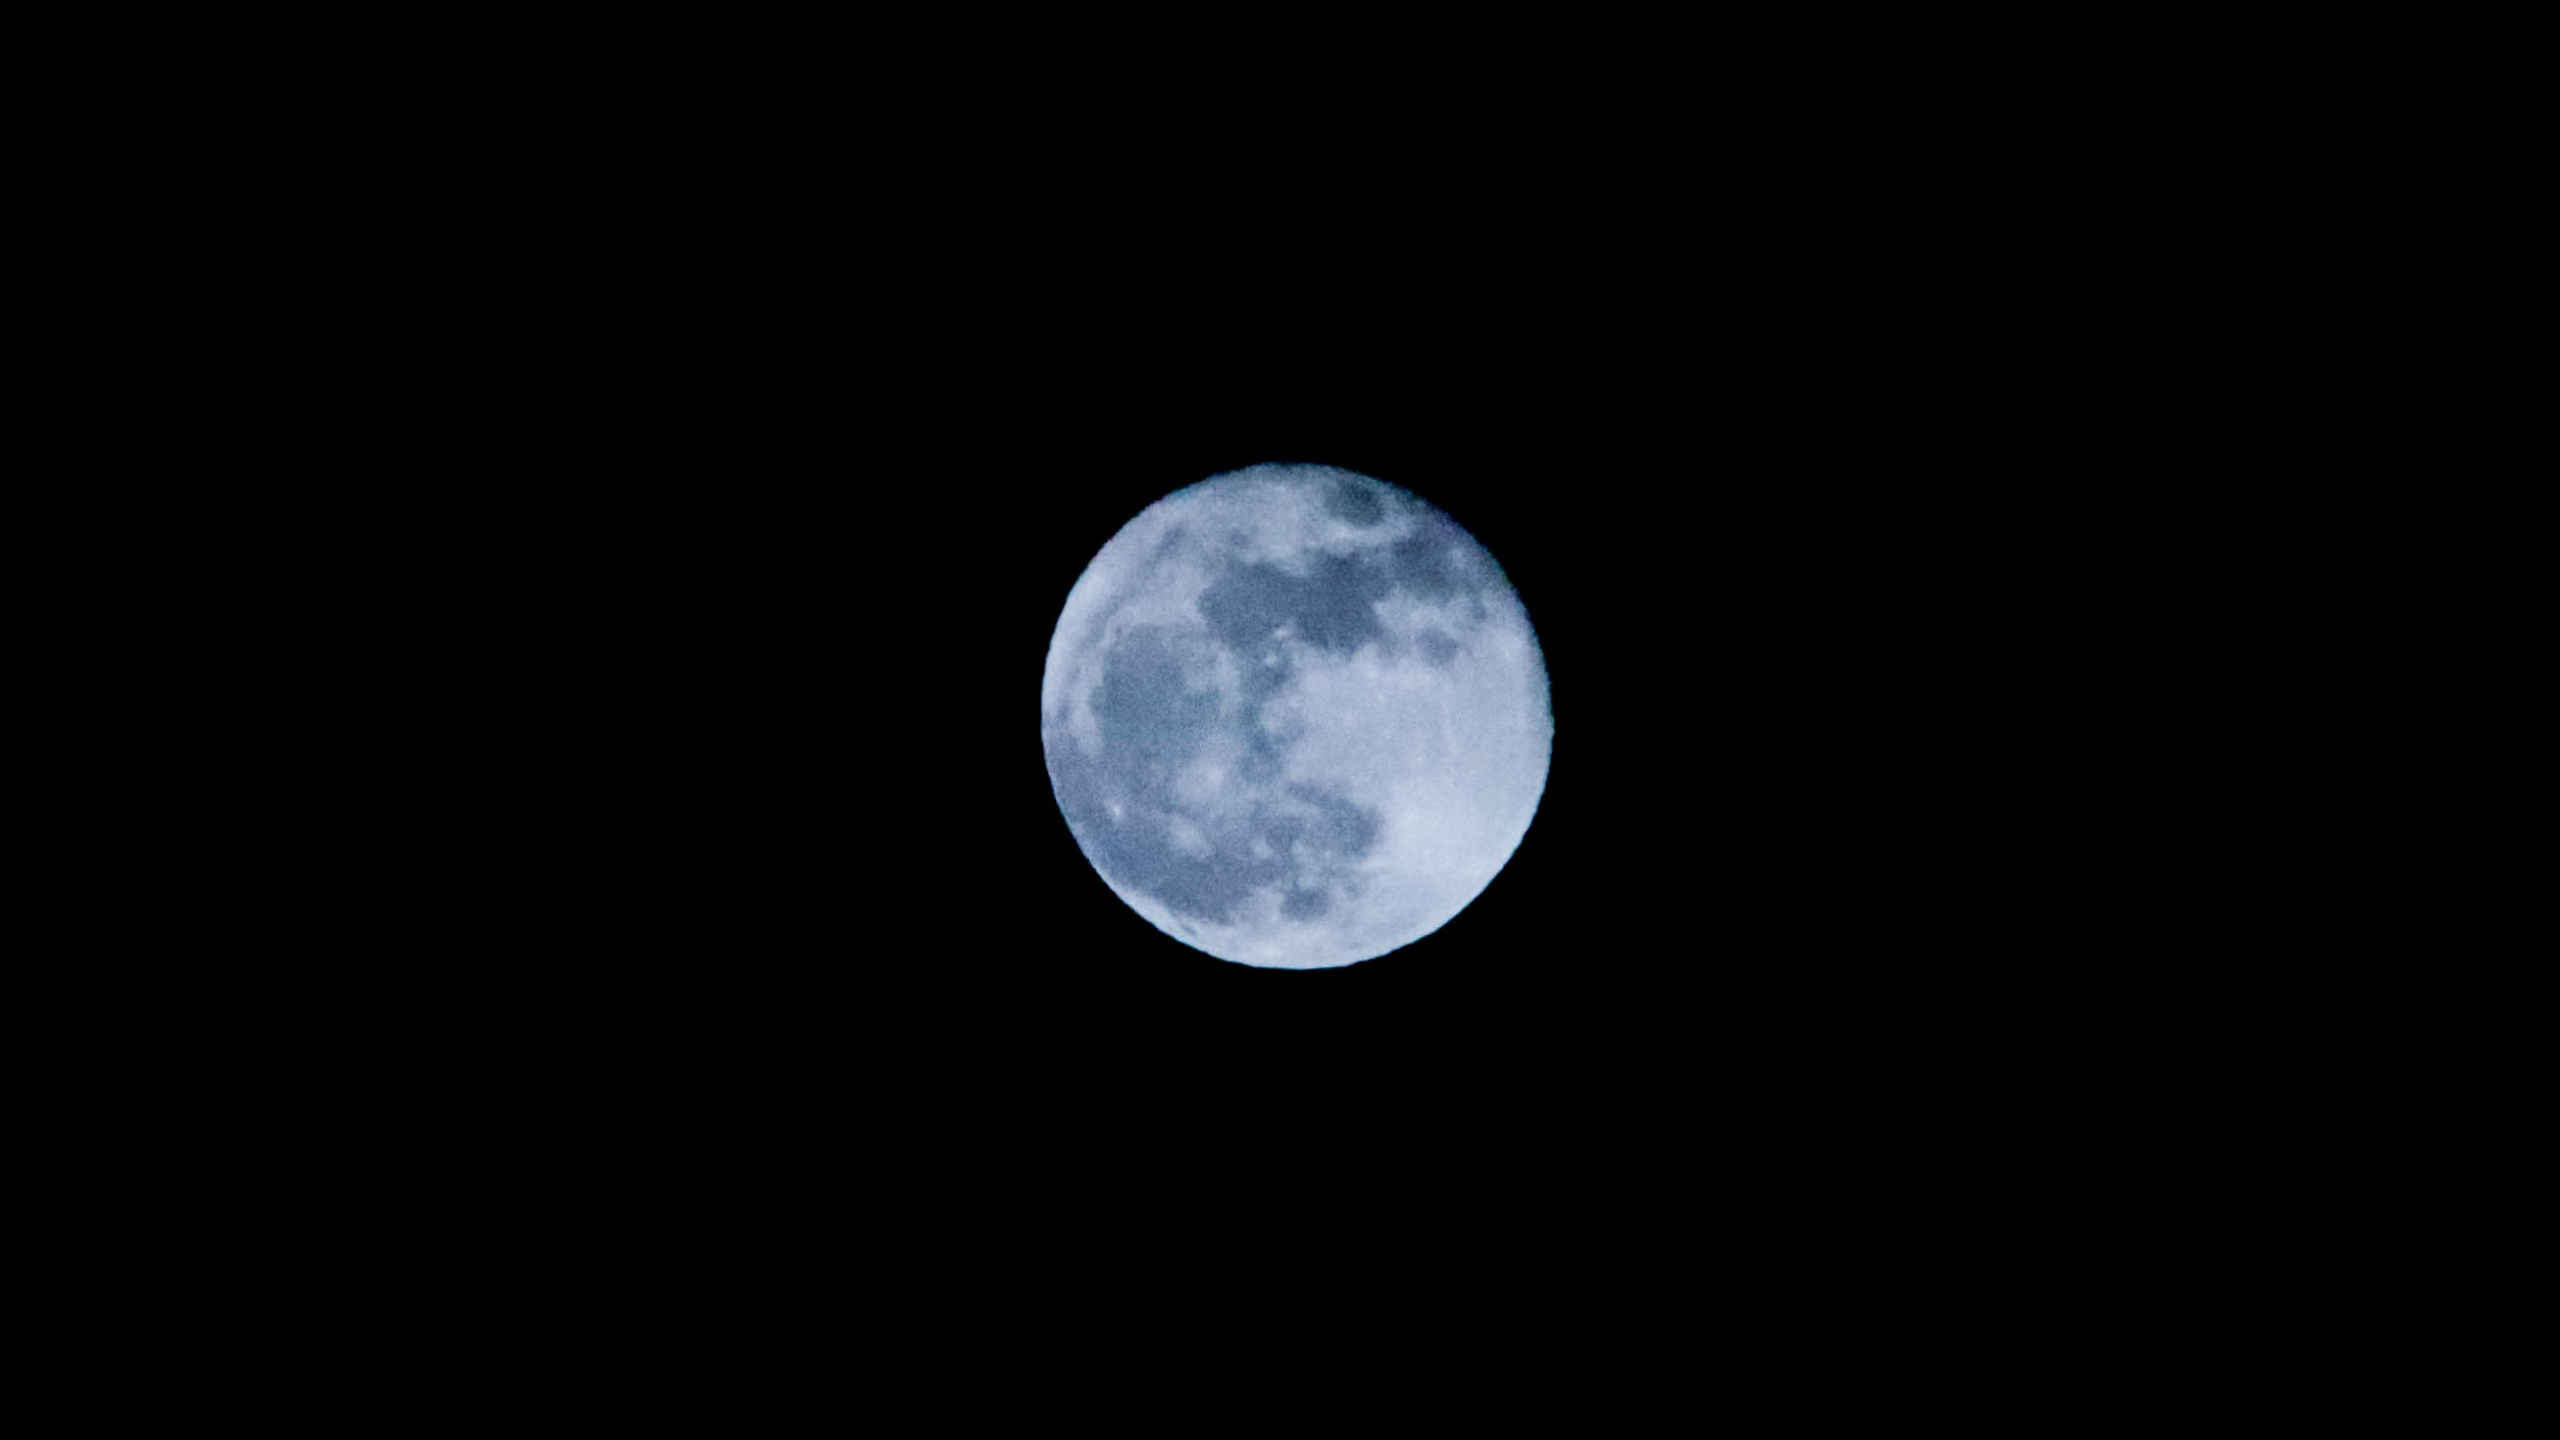 Обои В Moonlight Meadery Курц Яблочный Пирог, луна, астрономический объект, свет, лунный свет в разрешении 2560x1440